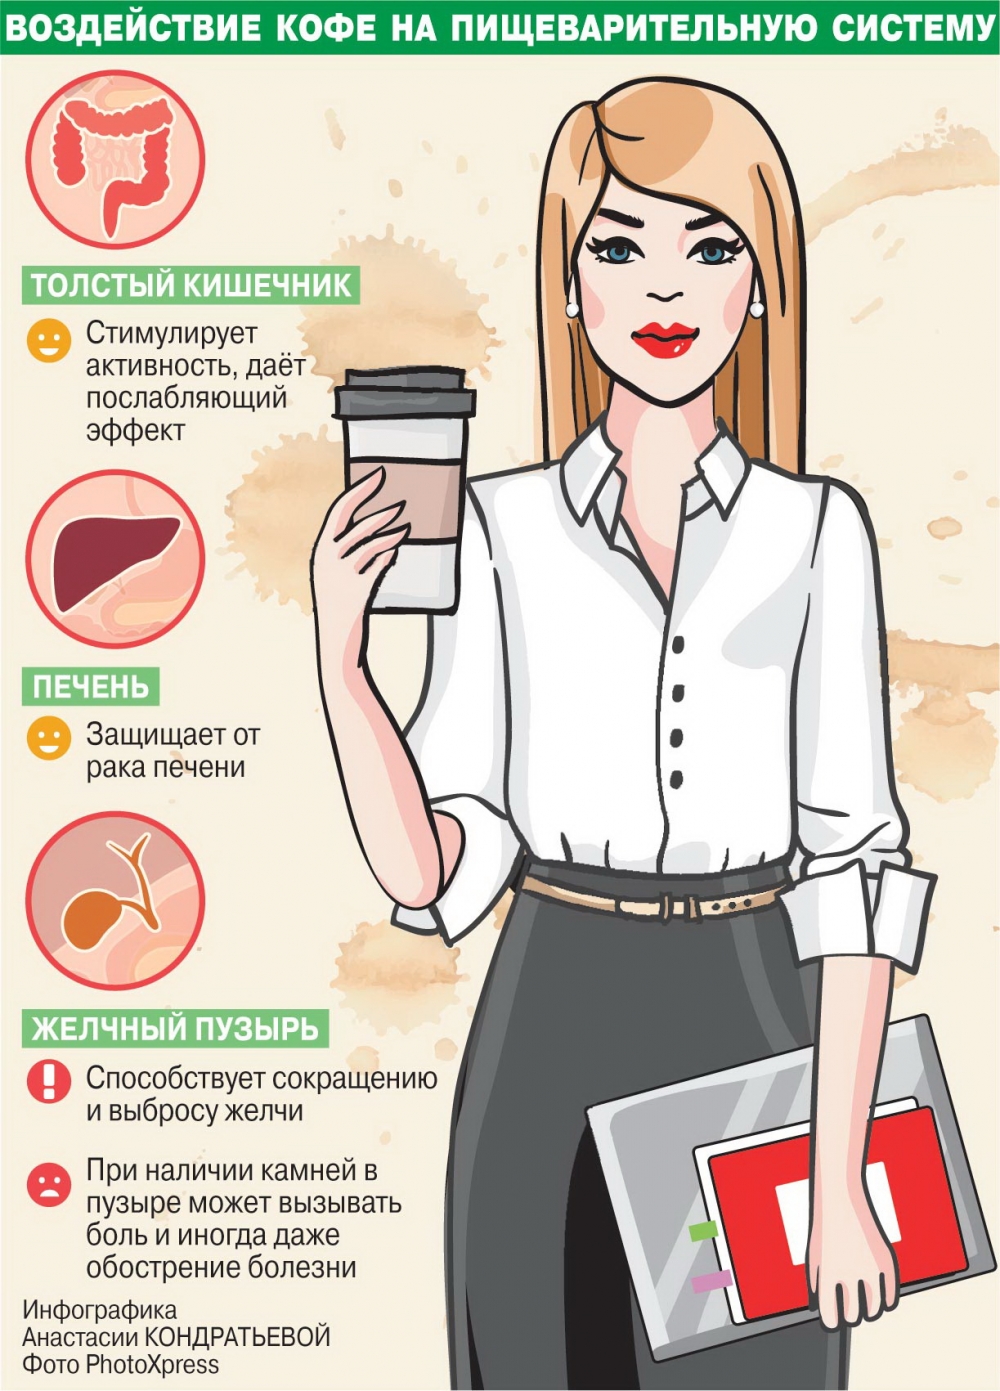 Кофеин зачем. Кофе вредно. Полезность кофе для организма. Польза кофе. Влияние кофе на организм человека.